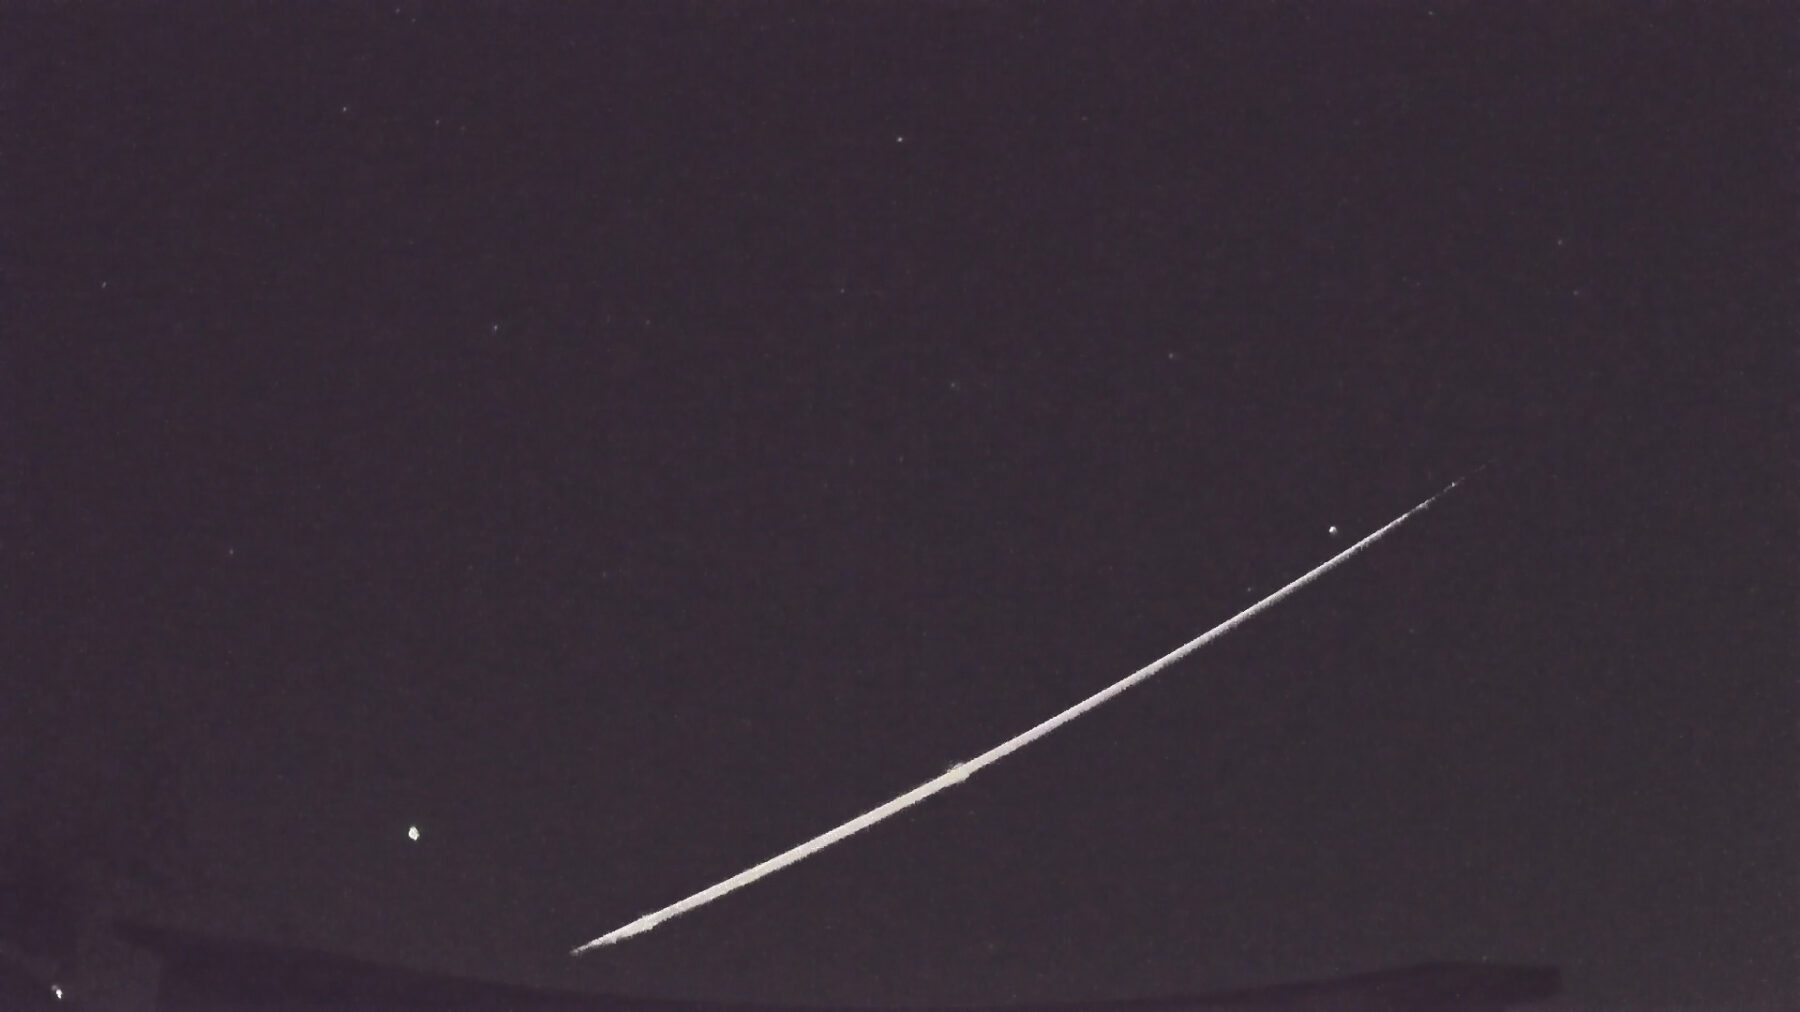 Meteor fireball over California on September 23